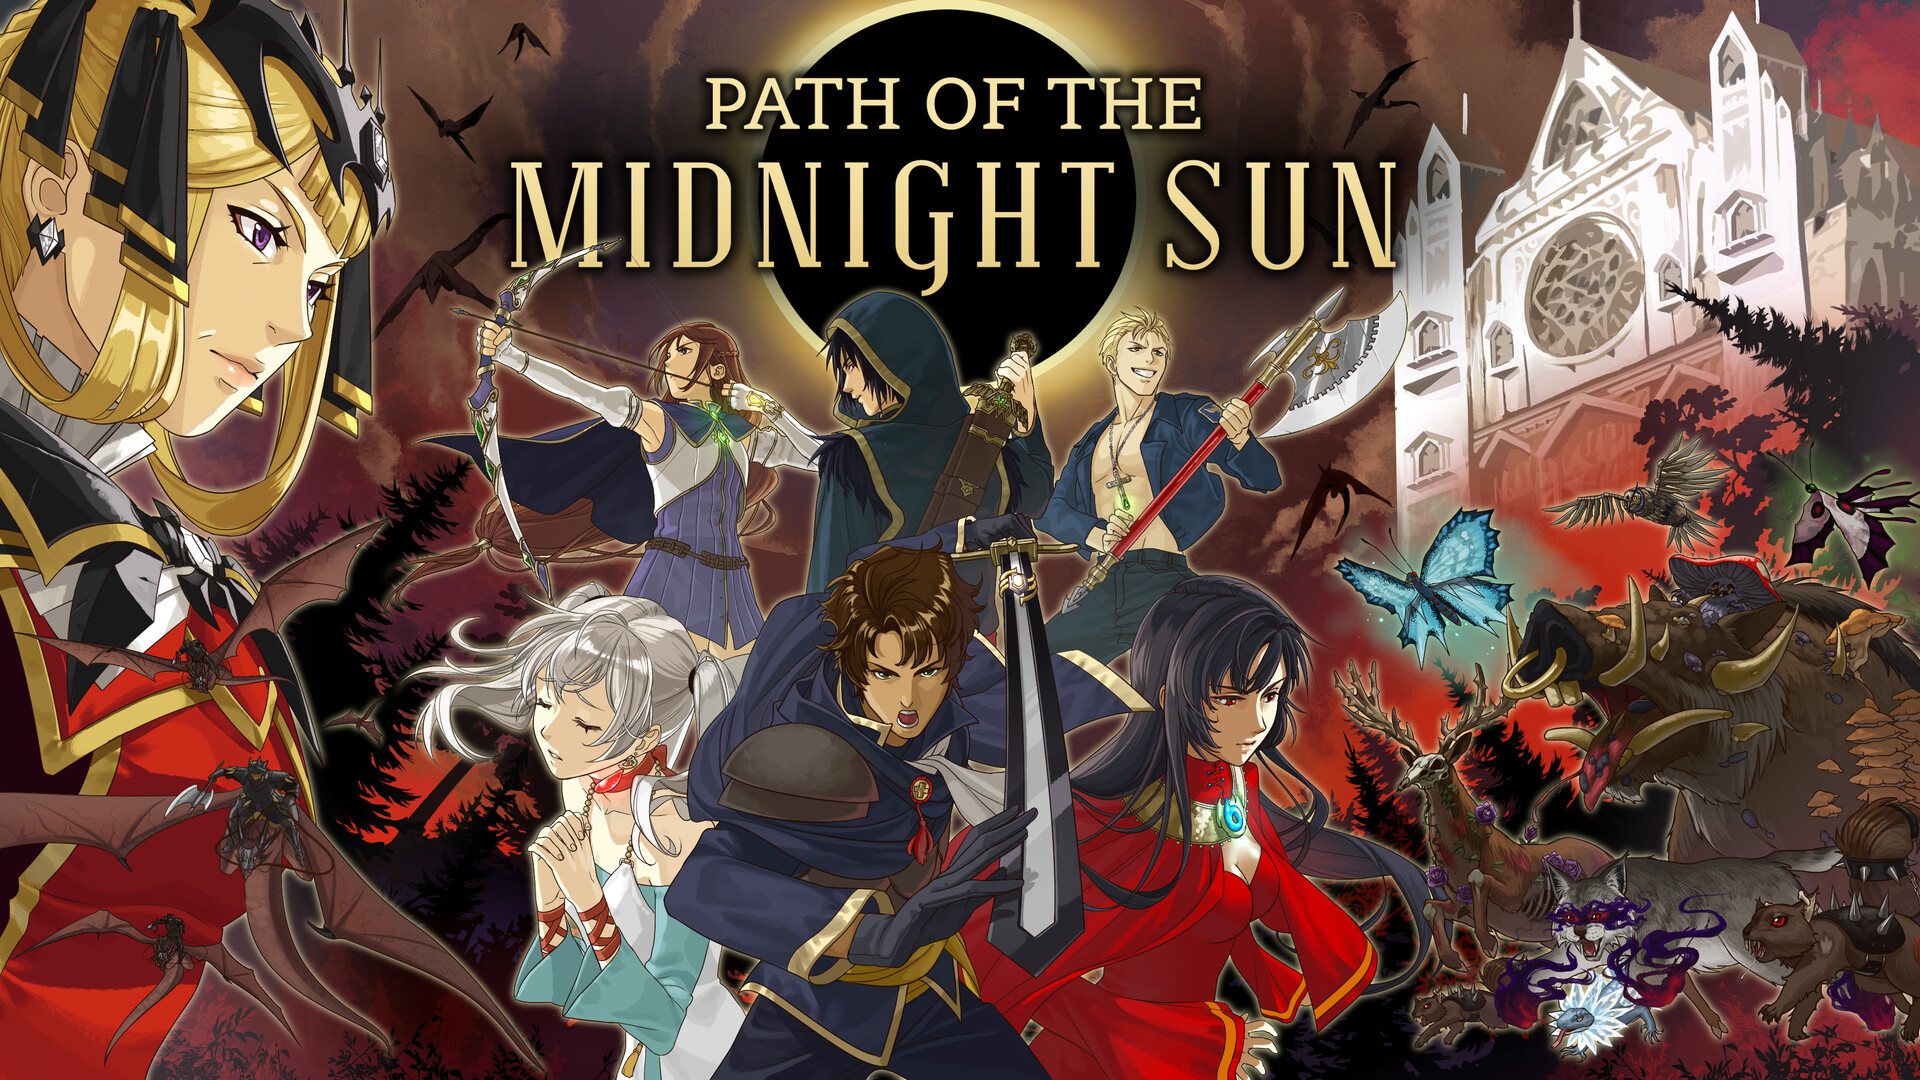 Midnight Sun, Official Trailer [HD]